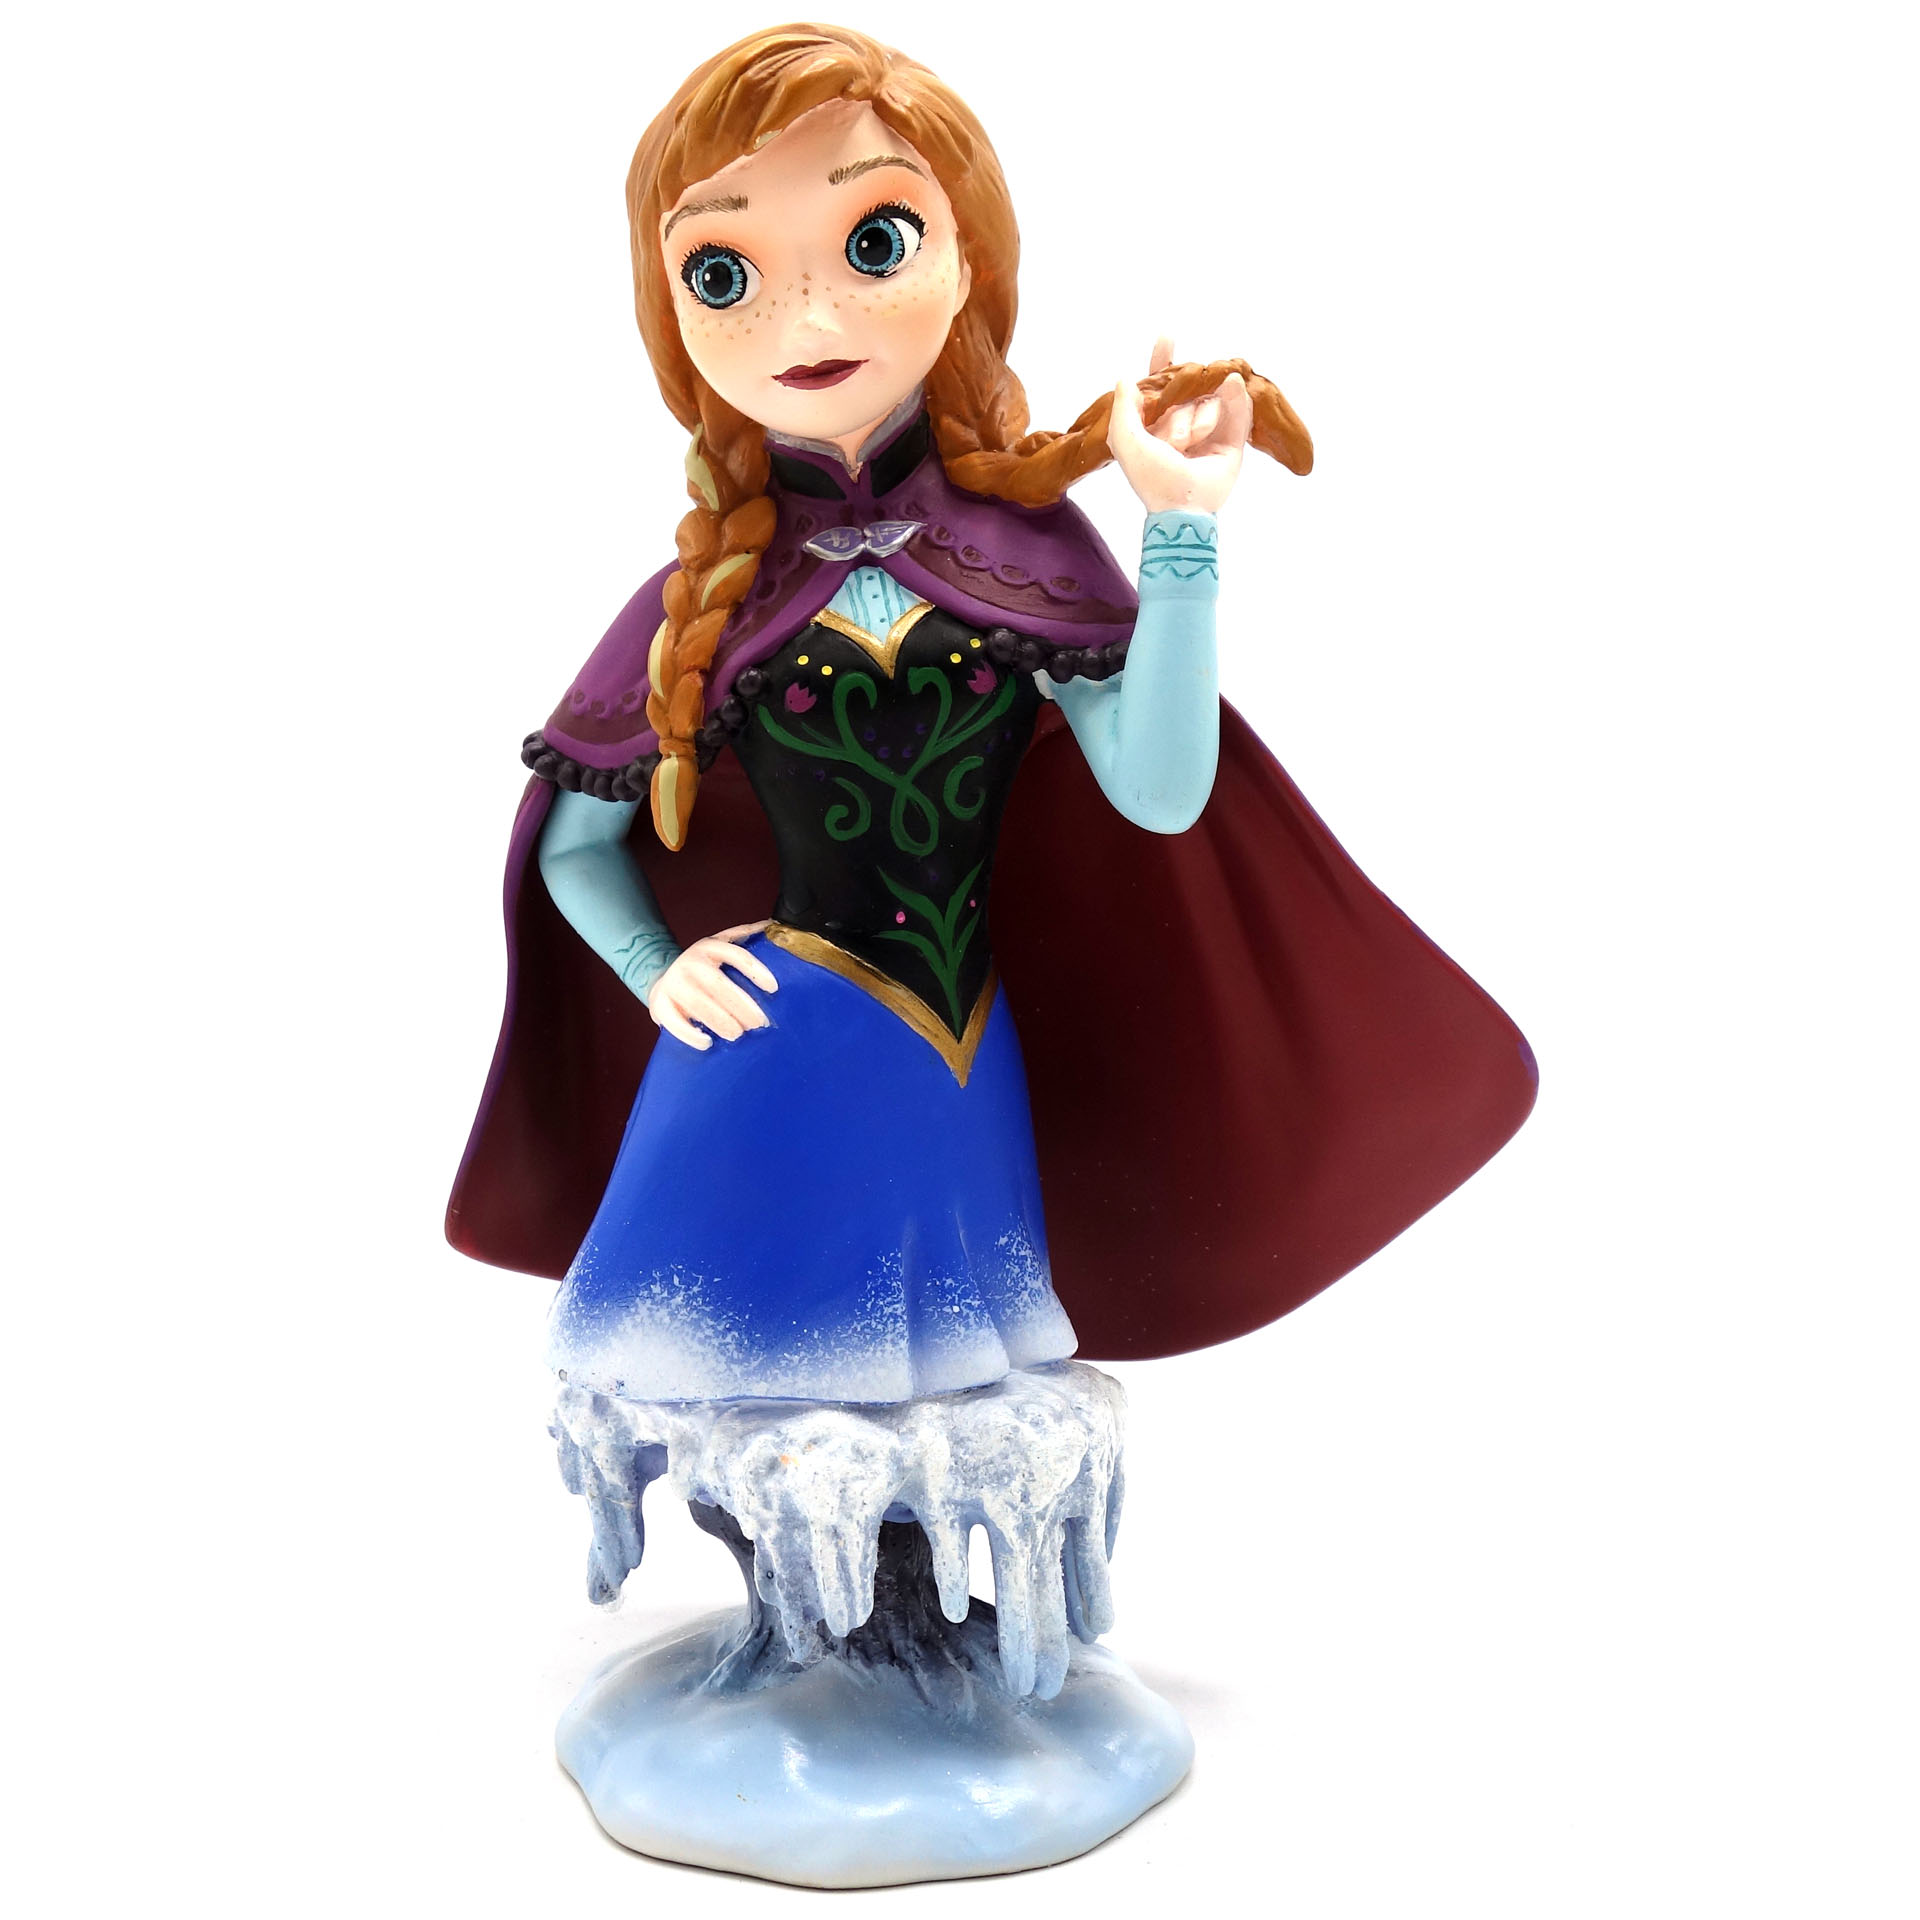 Sammelfigur Disney Anna Frozen Die Eiskönigin 4042561